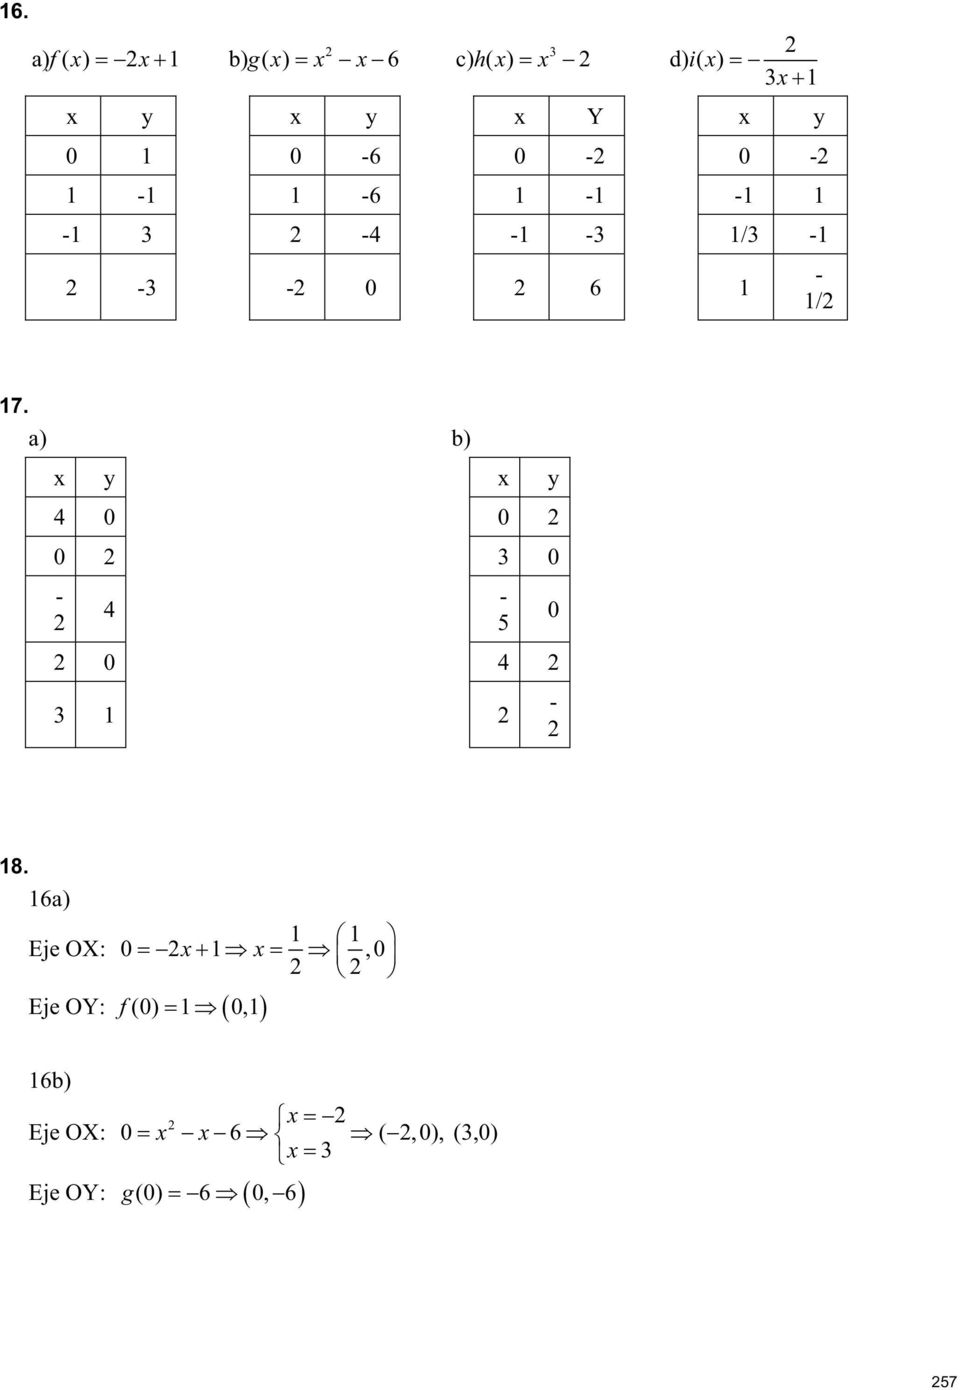 a) b) x y x y 4 0 0 0 3 0-4 0 4 3 1-5 0-18.